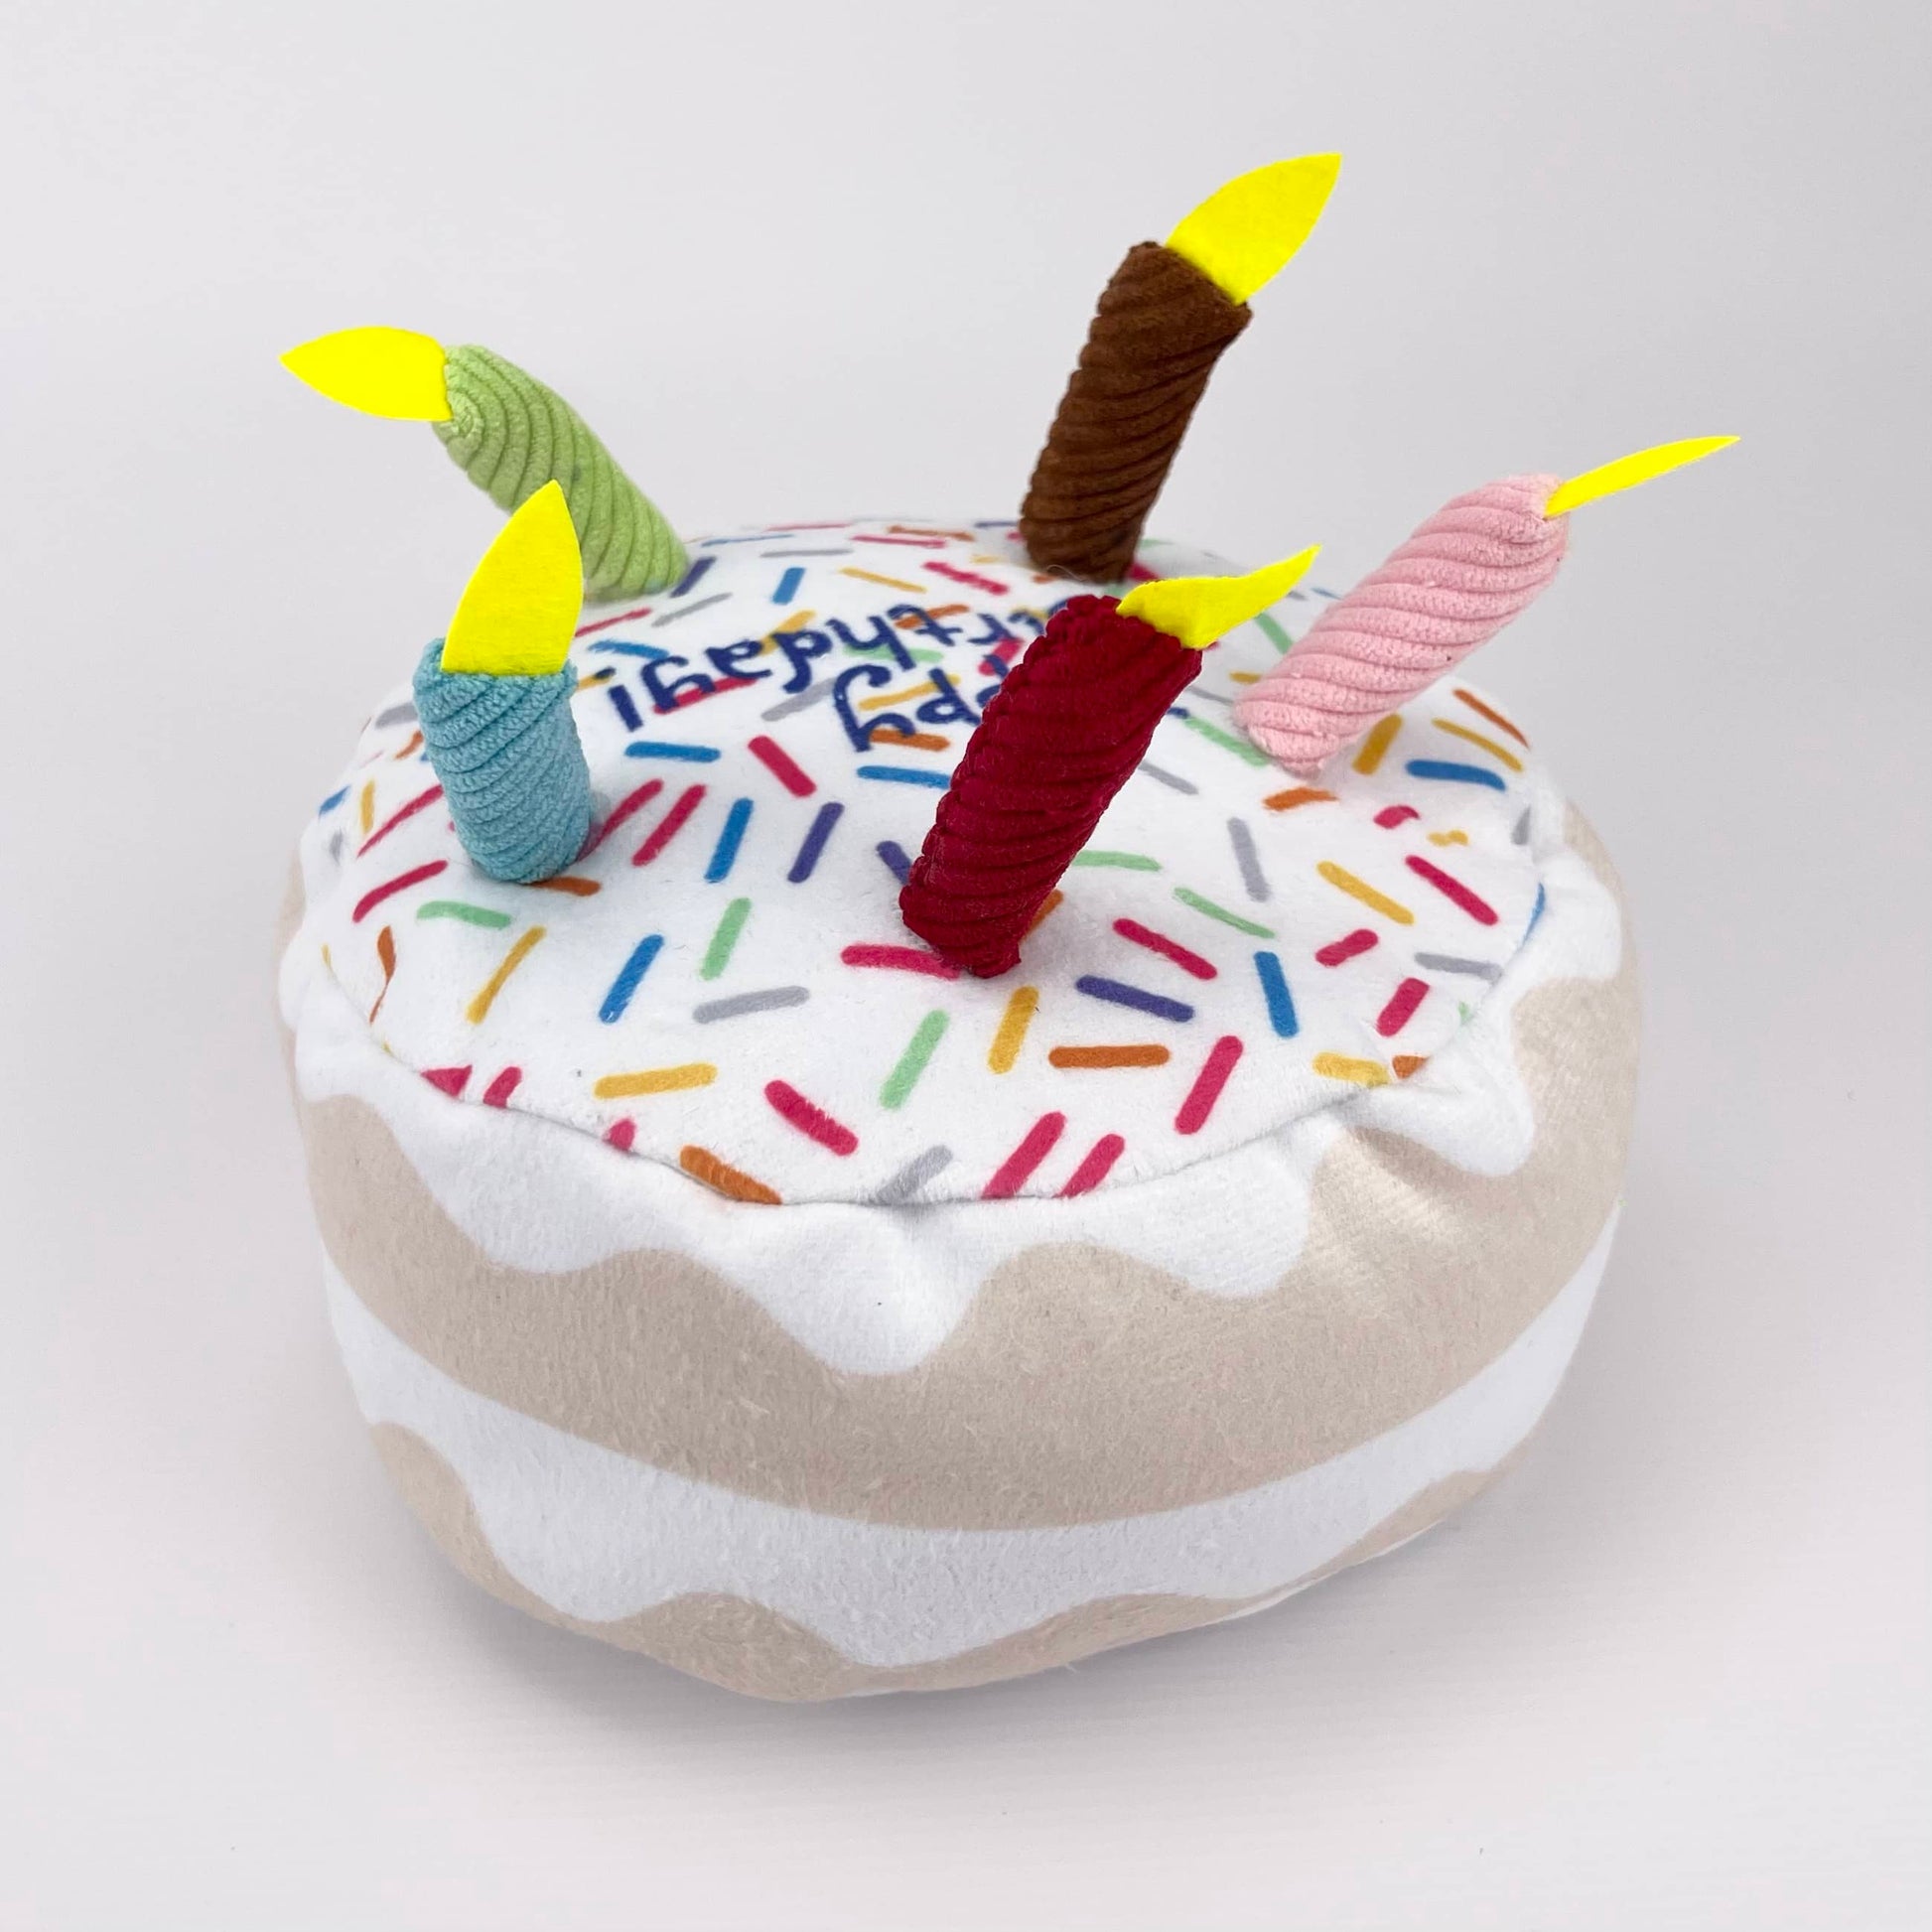 Happy Birthday Dog Cake Toy